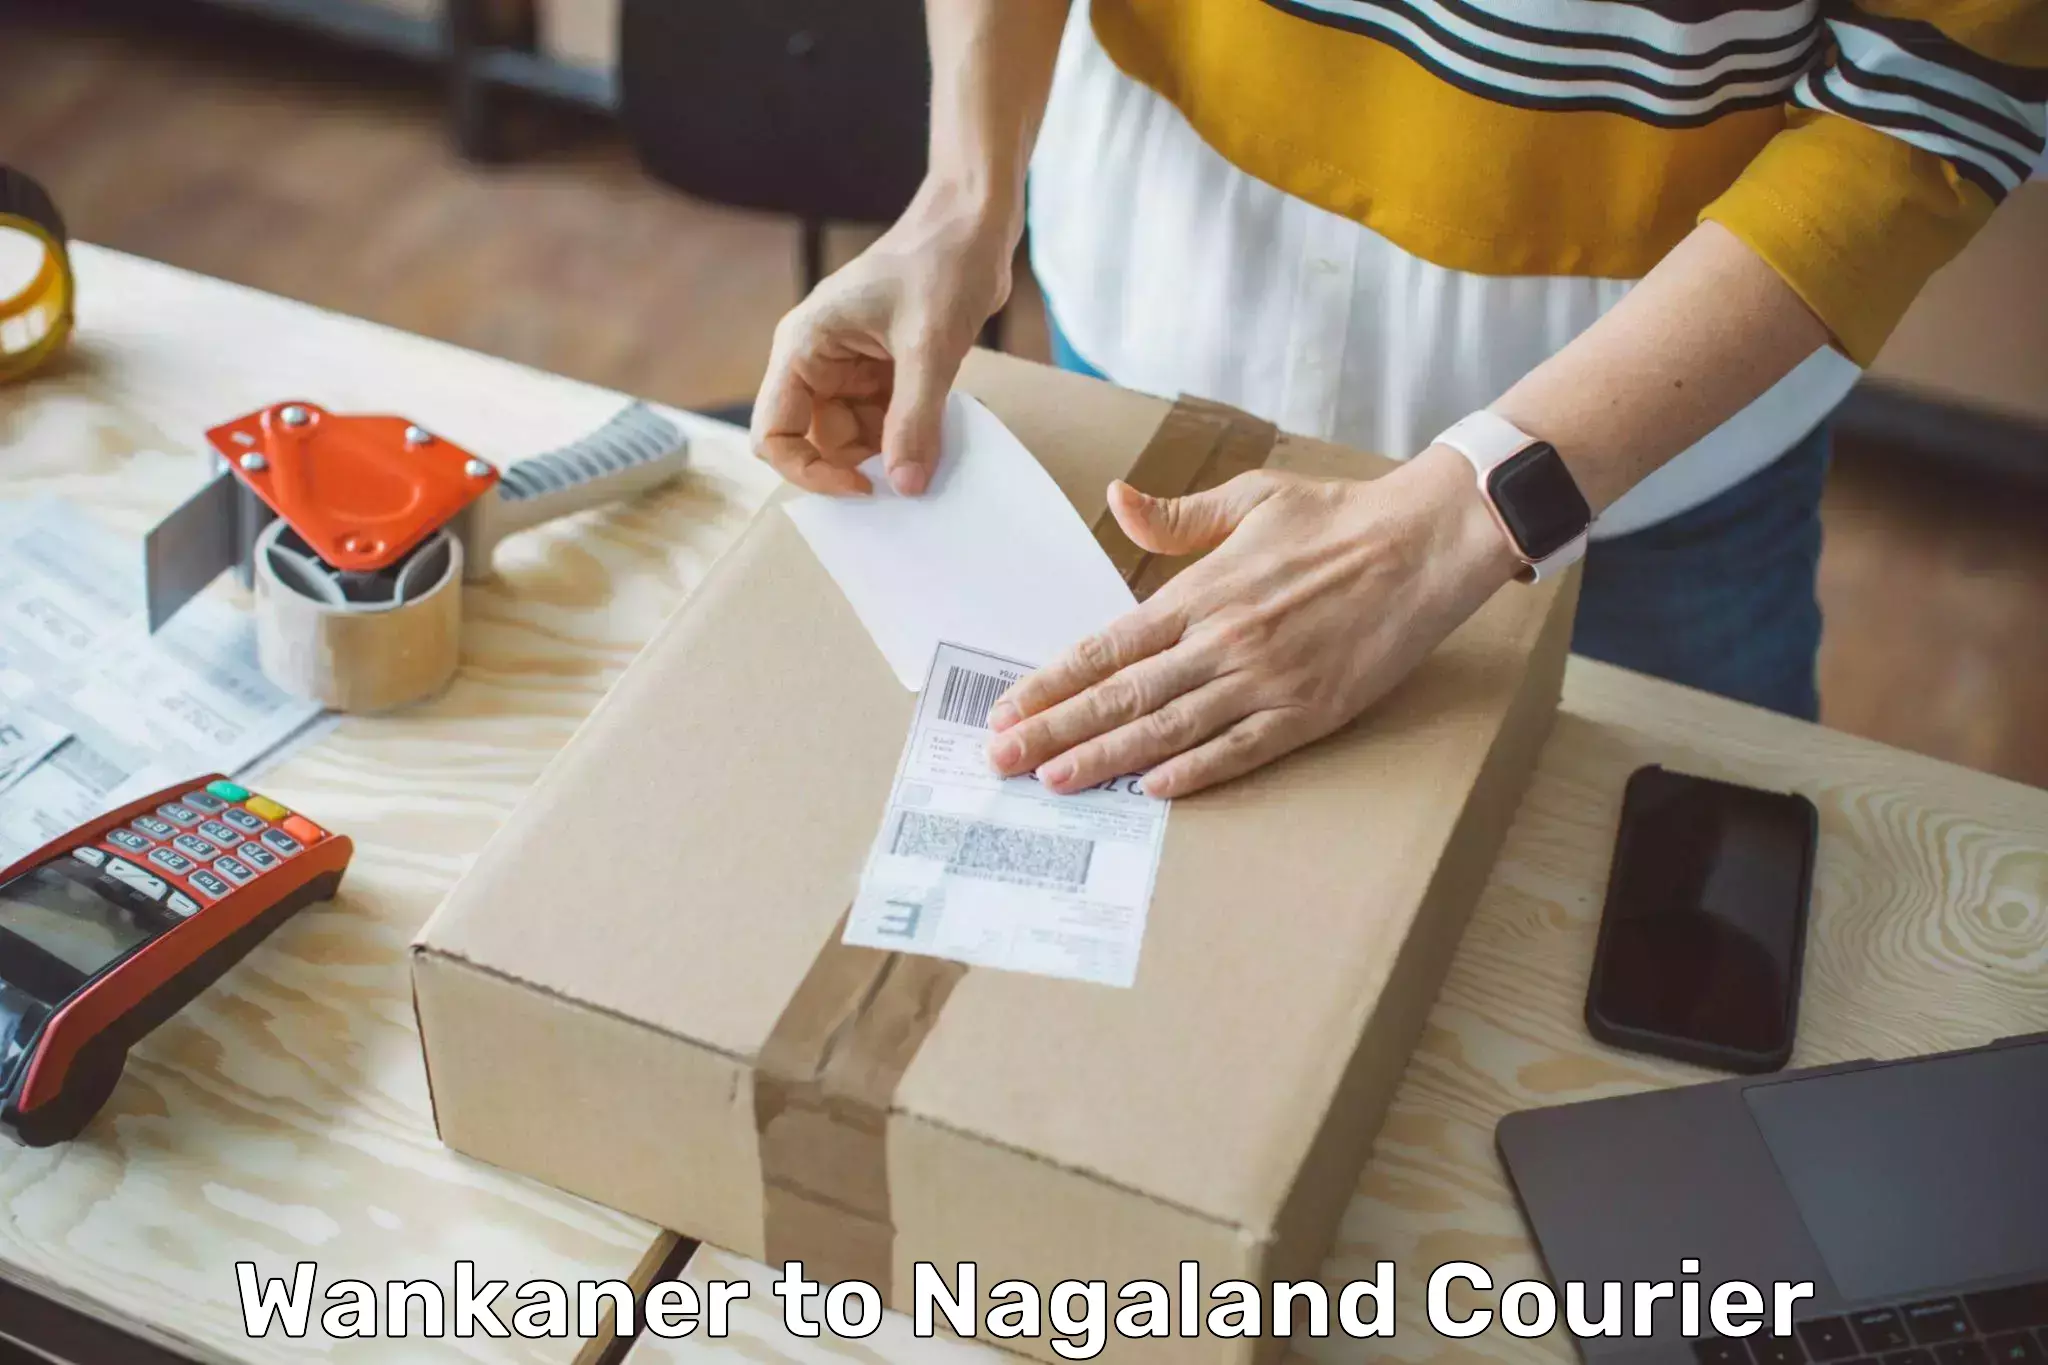 Global shipping solutions Wankaner to Nagaland